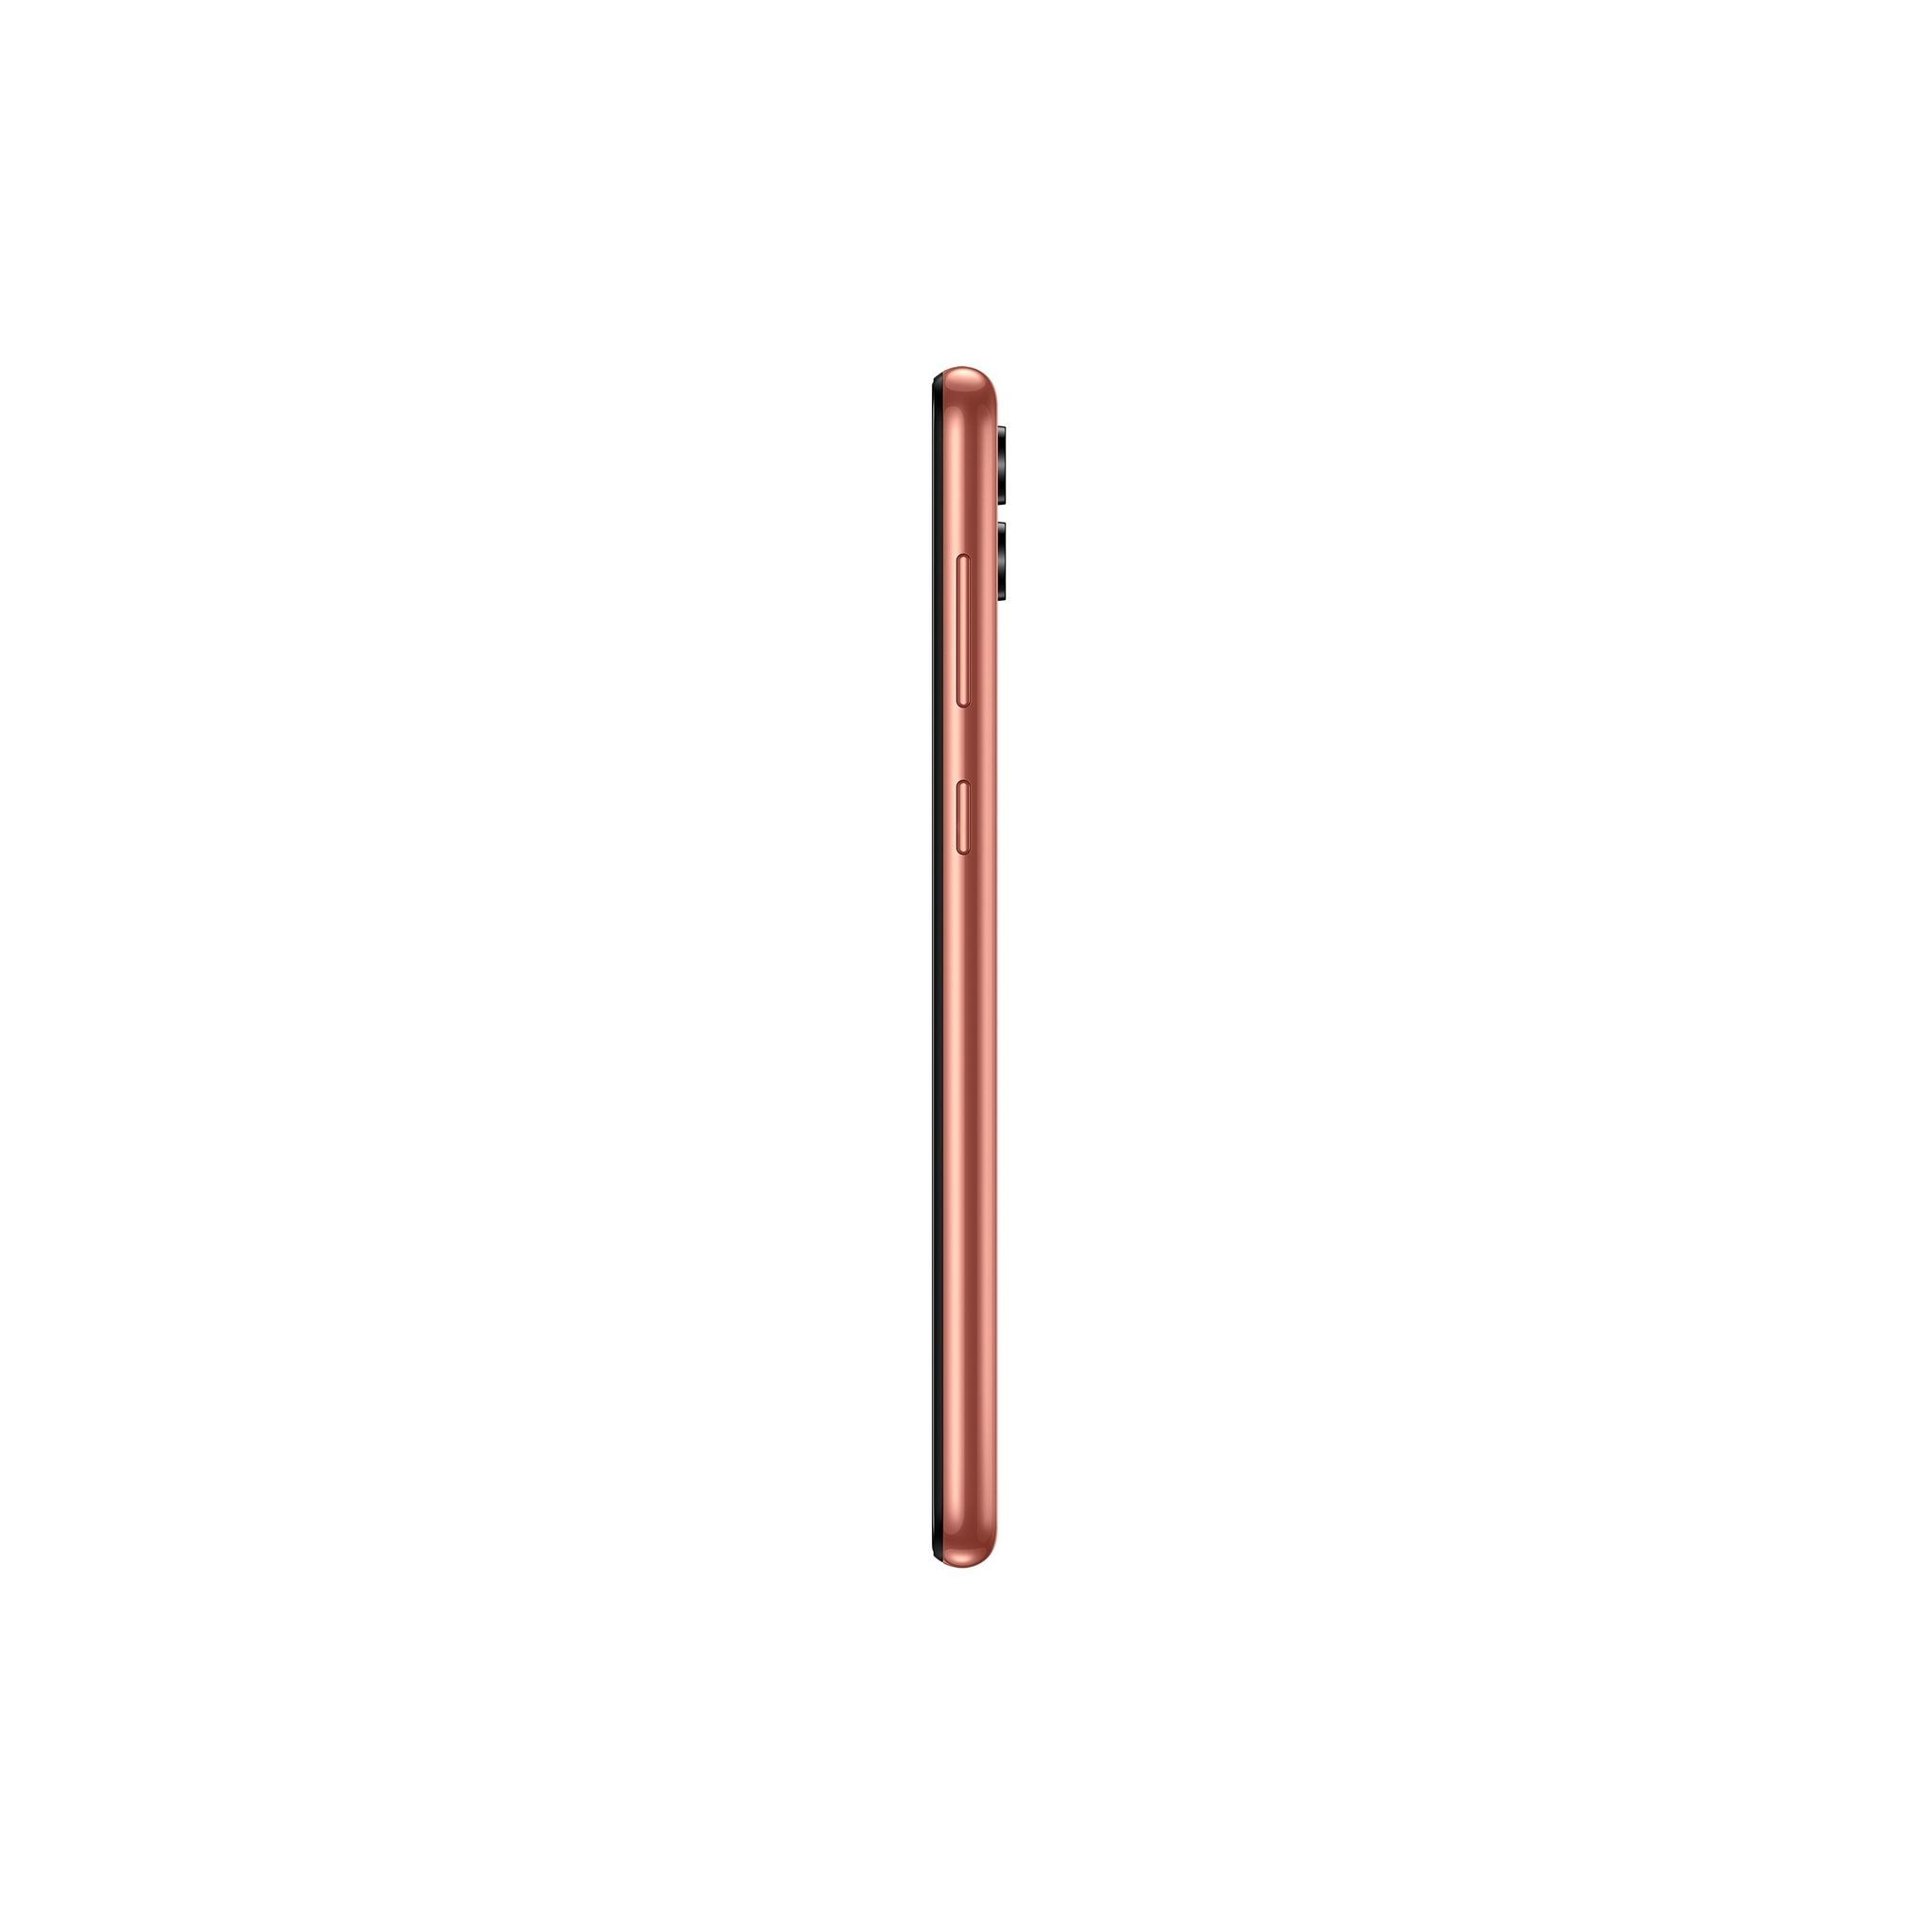 Samsung Galaxy A04 32GB Phone - Copper